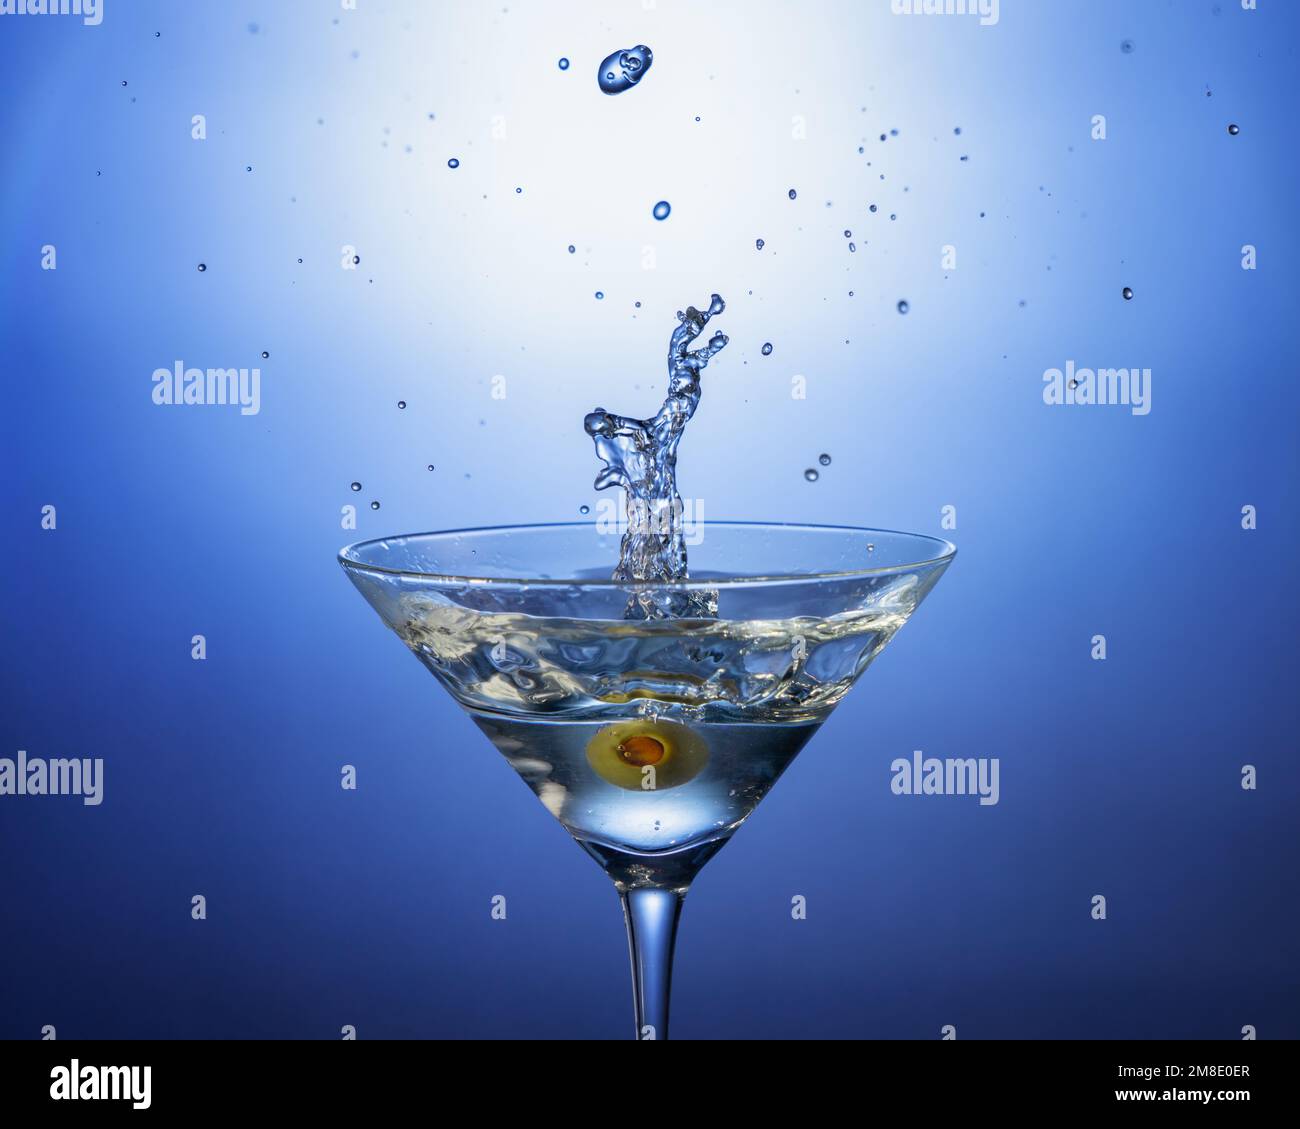 Una foto da cocktail di un'oliva è caduta in un martini sporco. Ripresa con illuminazione da studio e strobo di sincronizzazione ad alta velocità. Ideale per menu, Web o pubblicazioni Foto Stock